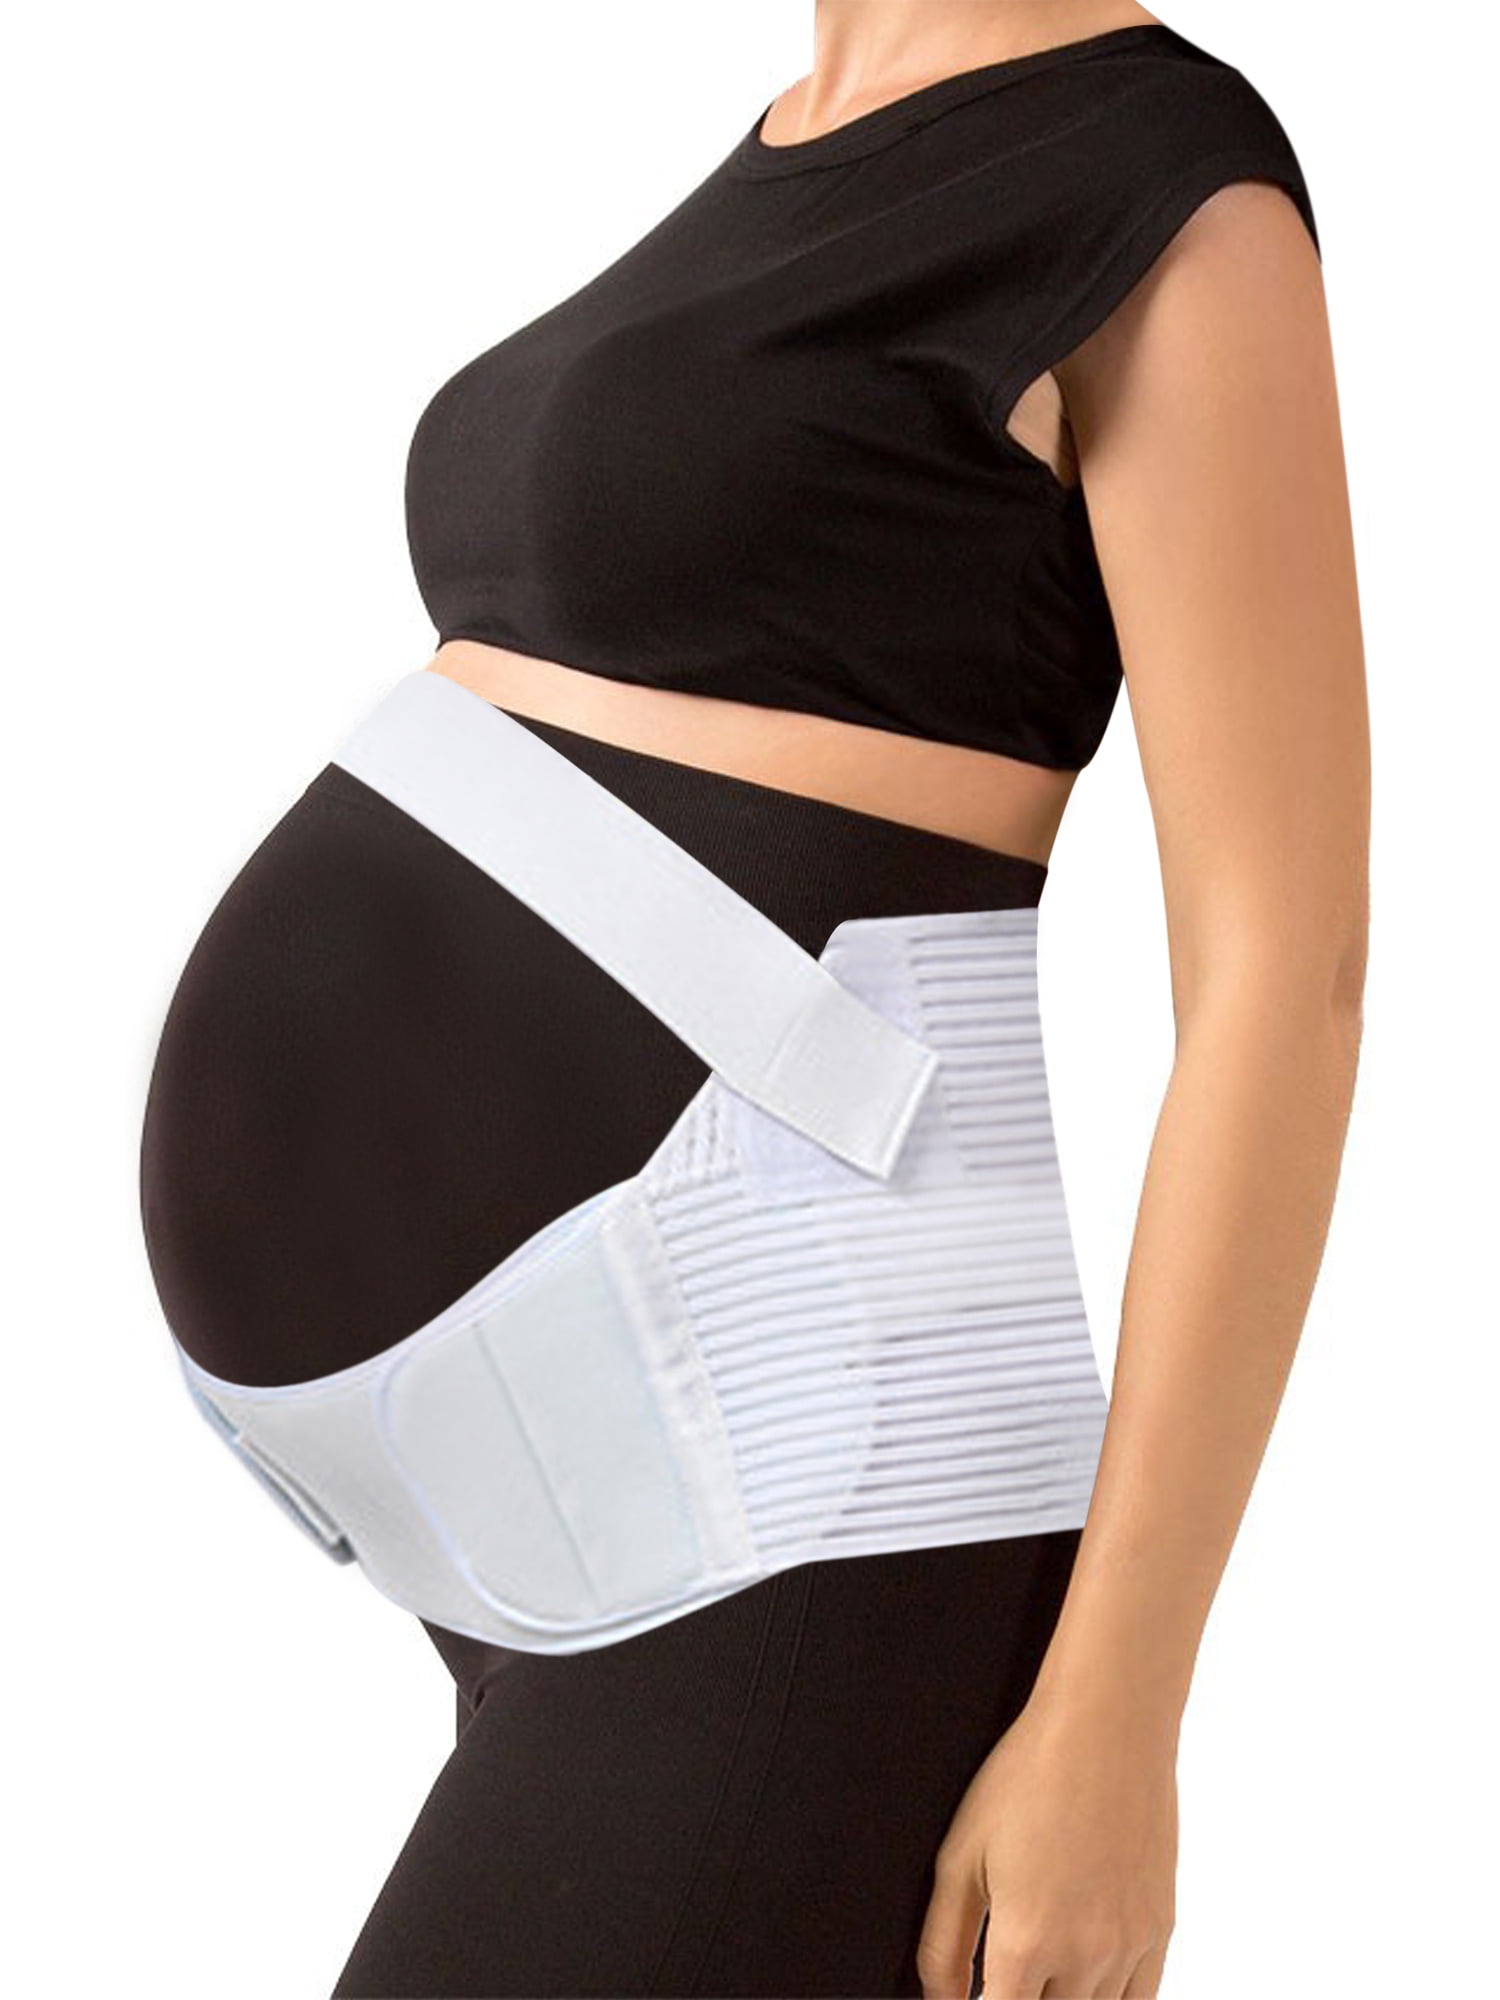 Pregnancy Support Belt Band Belly Bump brace Back Waist Maternity Lumbar Strap 